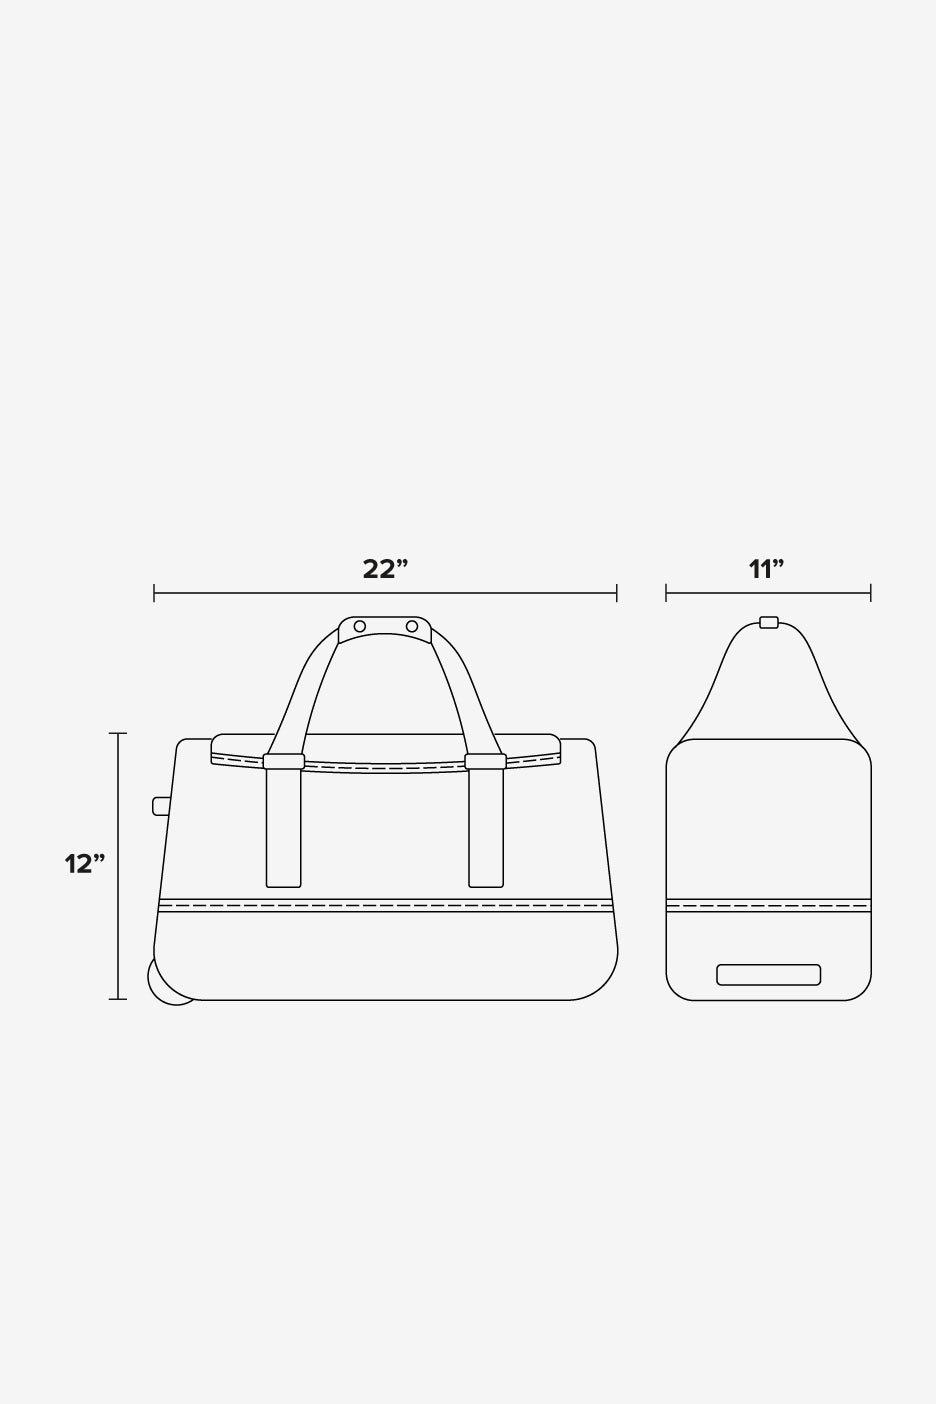 CALPAK Stevyn Rolling Duffel 22-inch bag dimensions